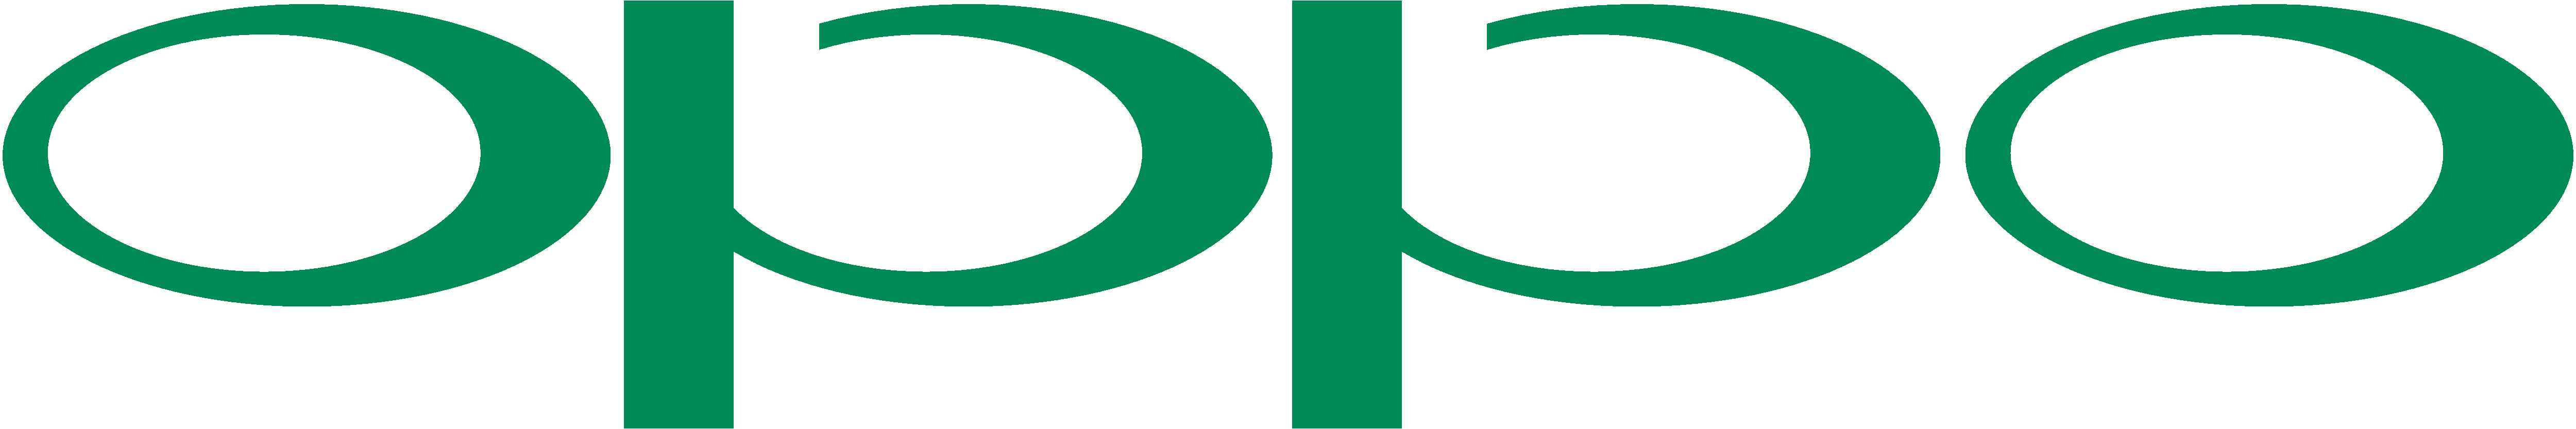 OPPO_logo.png